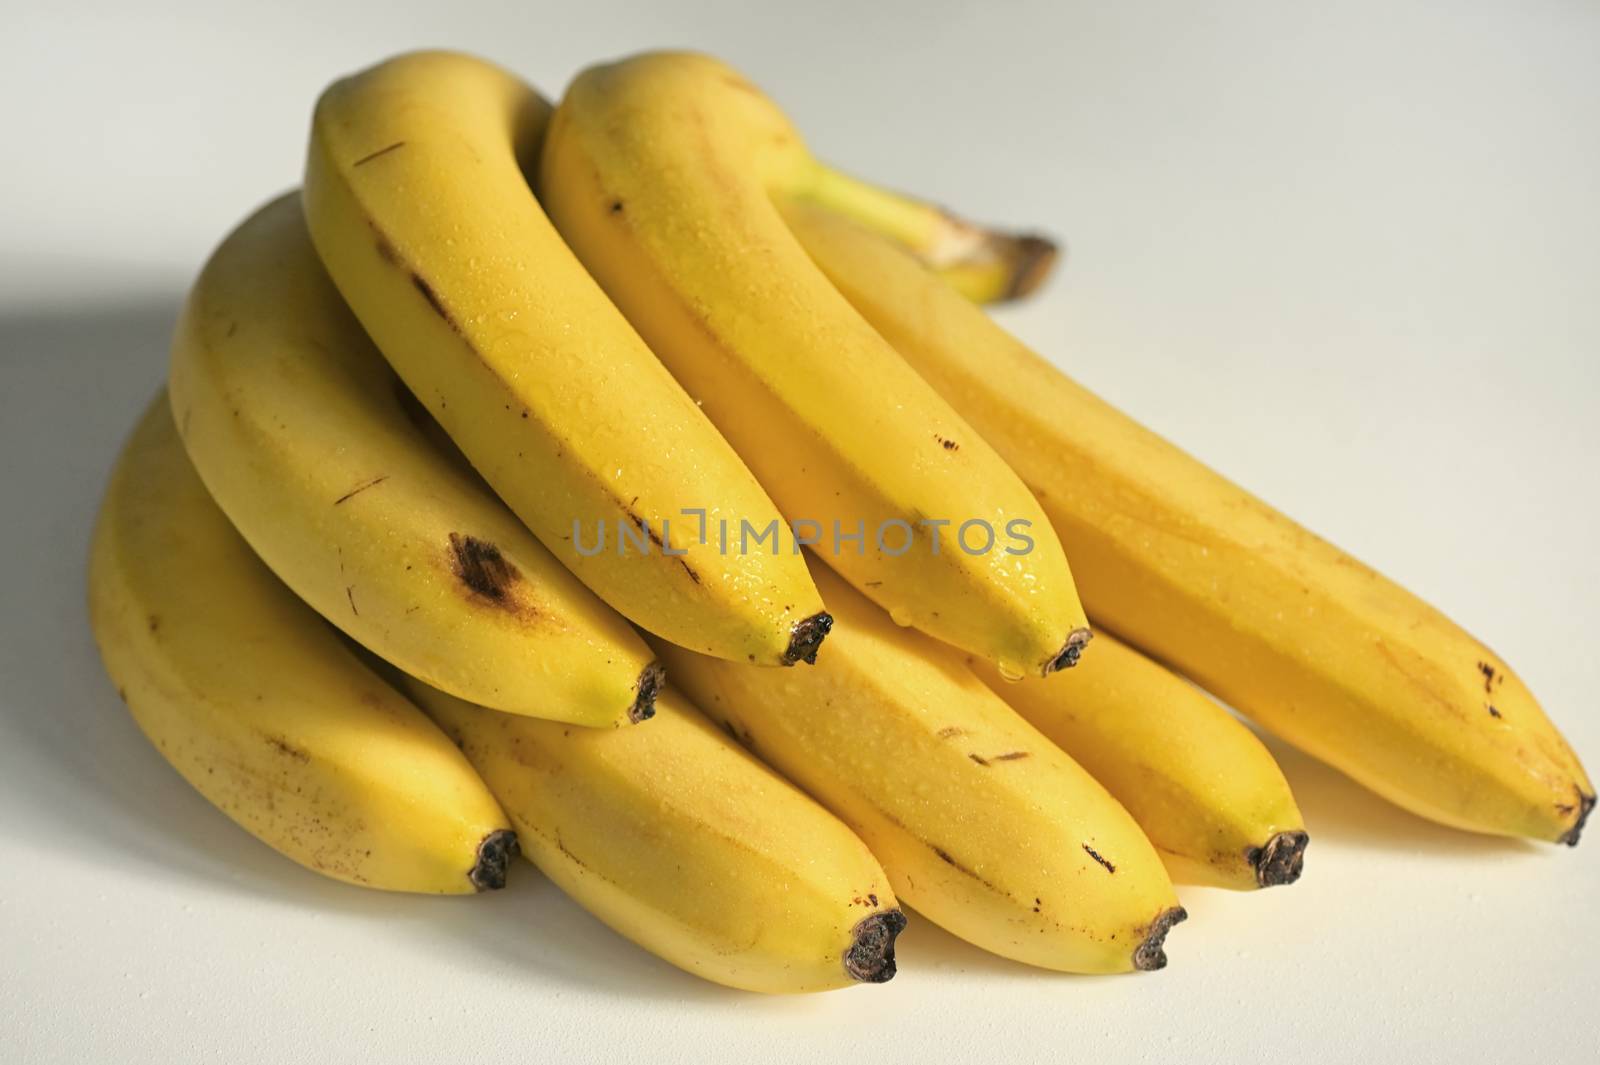 Bunch of raw ripe organic yellow bananas